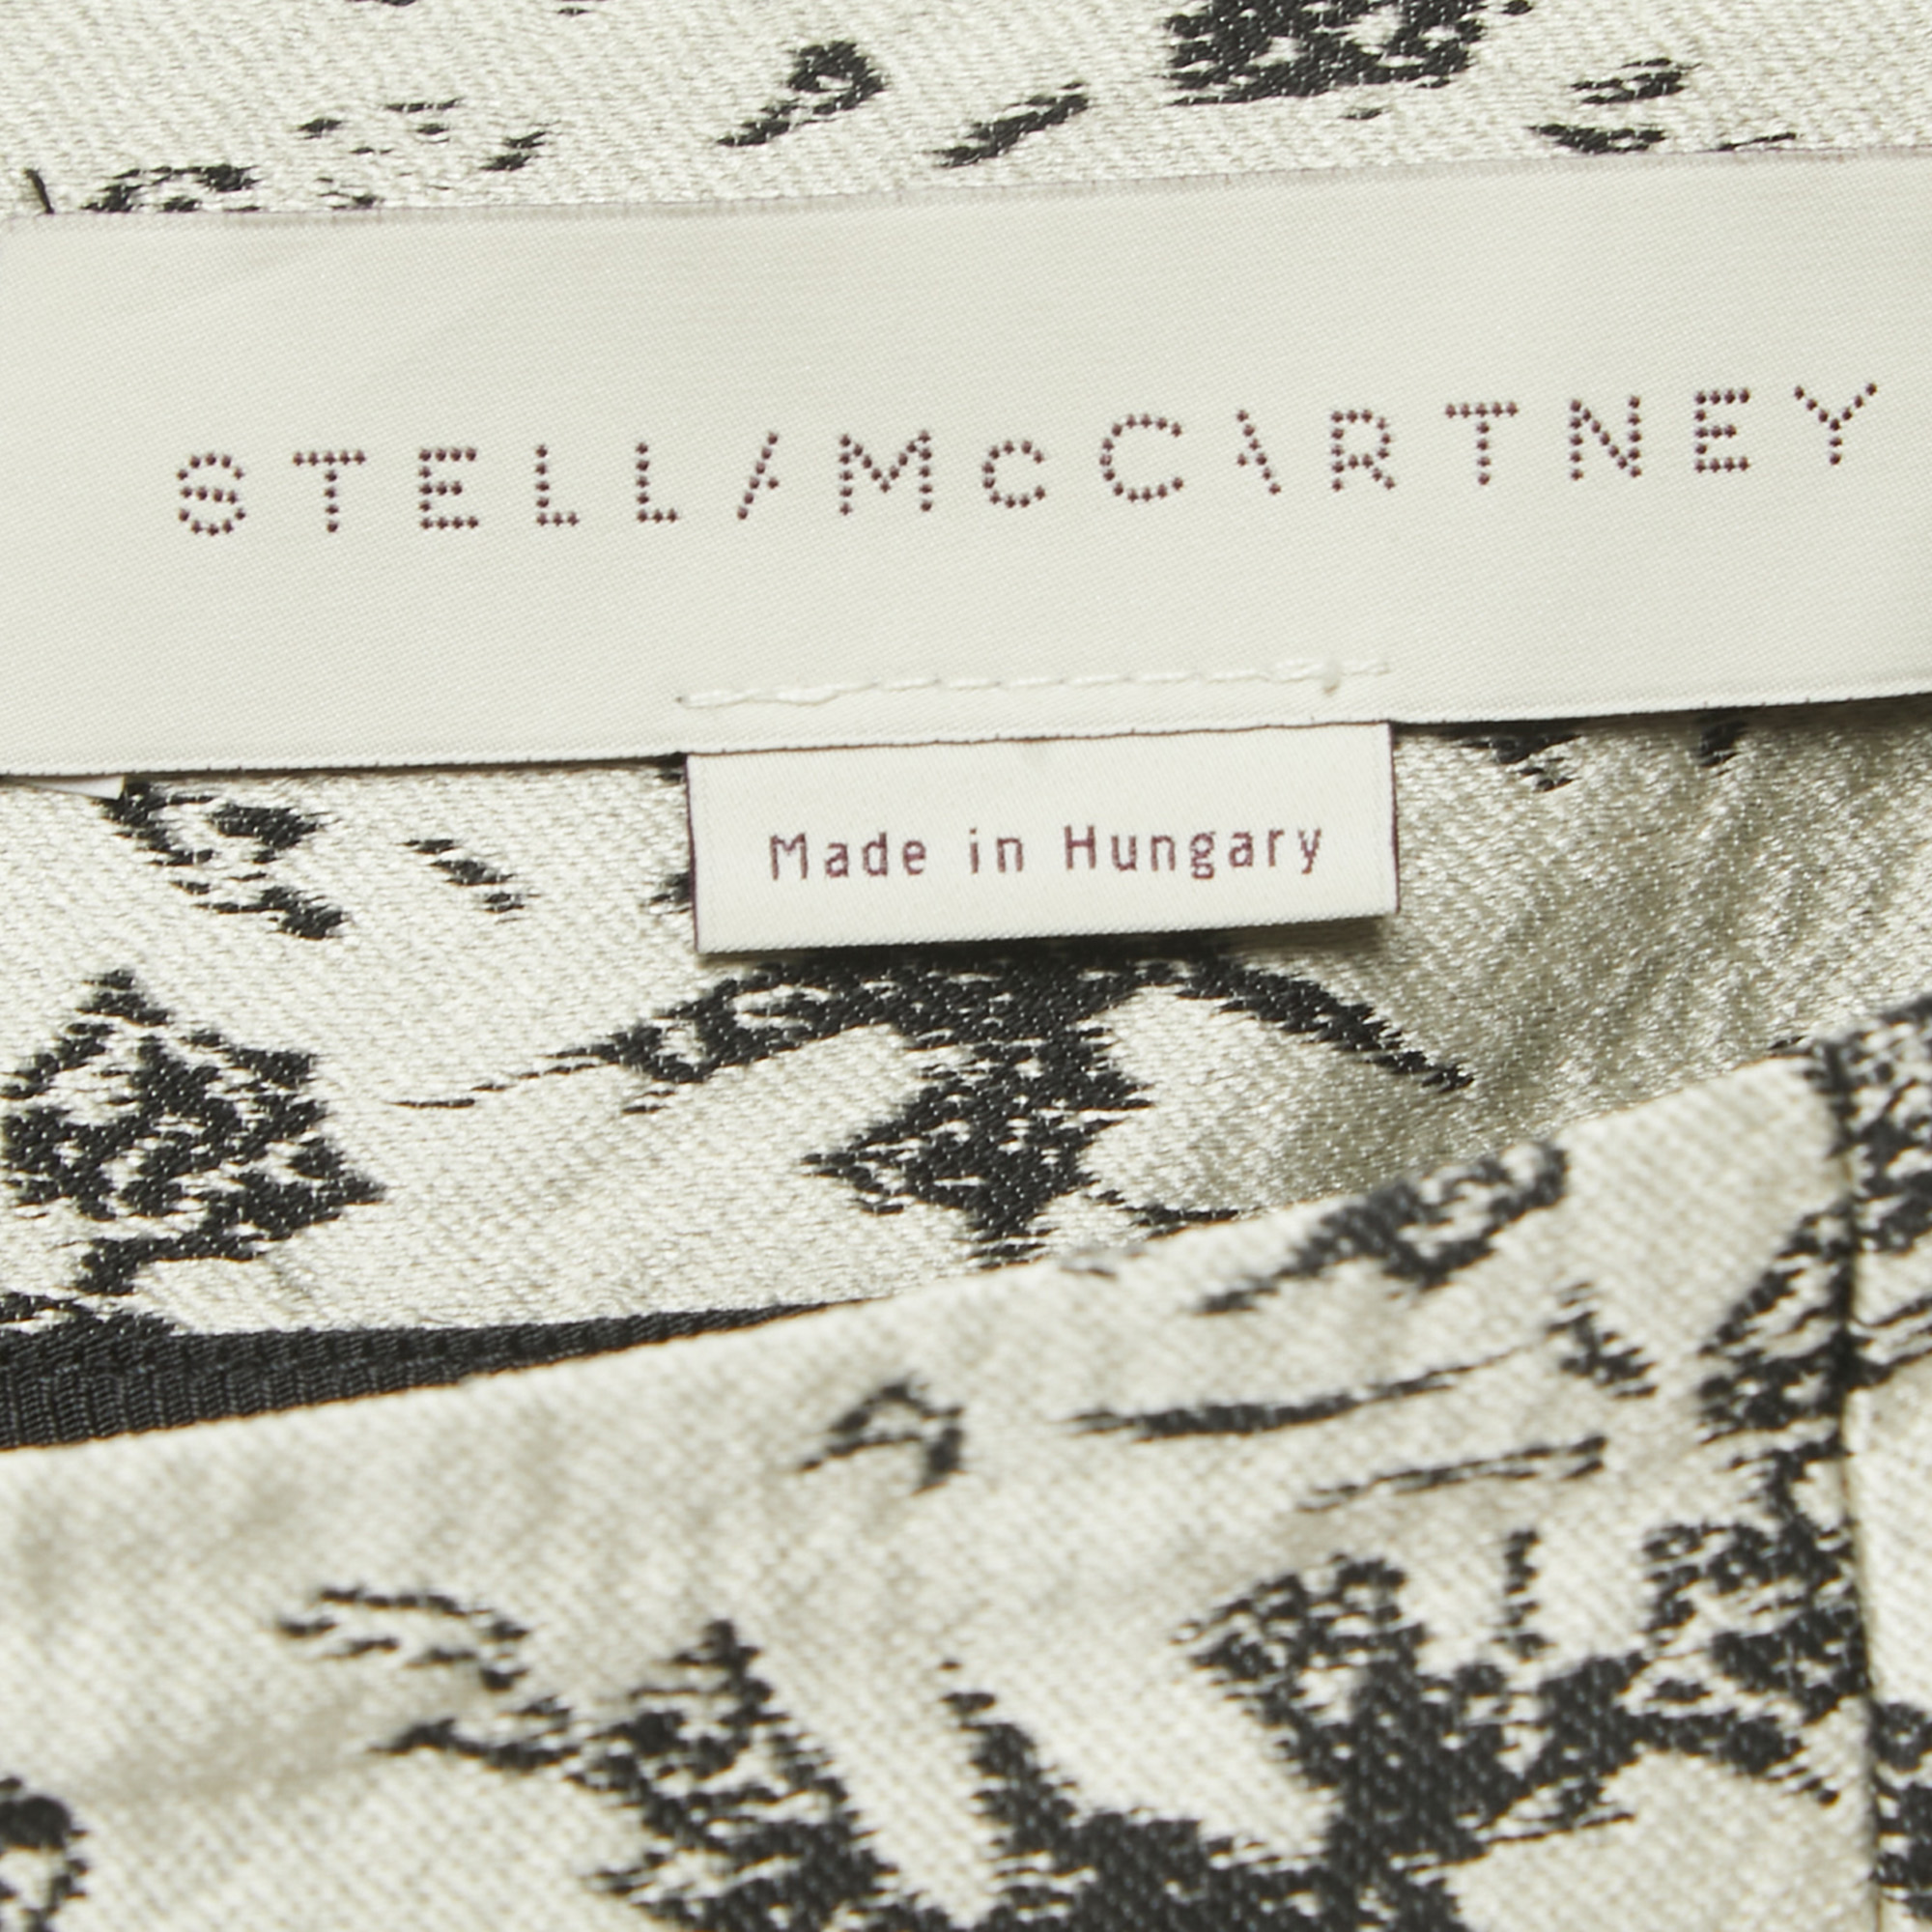 Stella McCartney Black/White Jacquard Skirt S